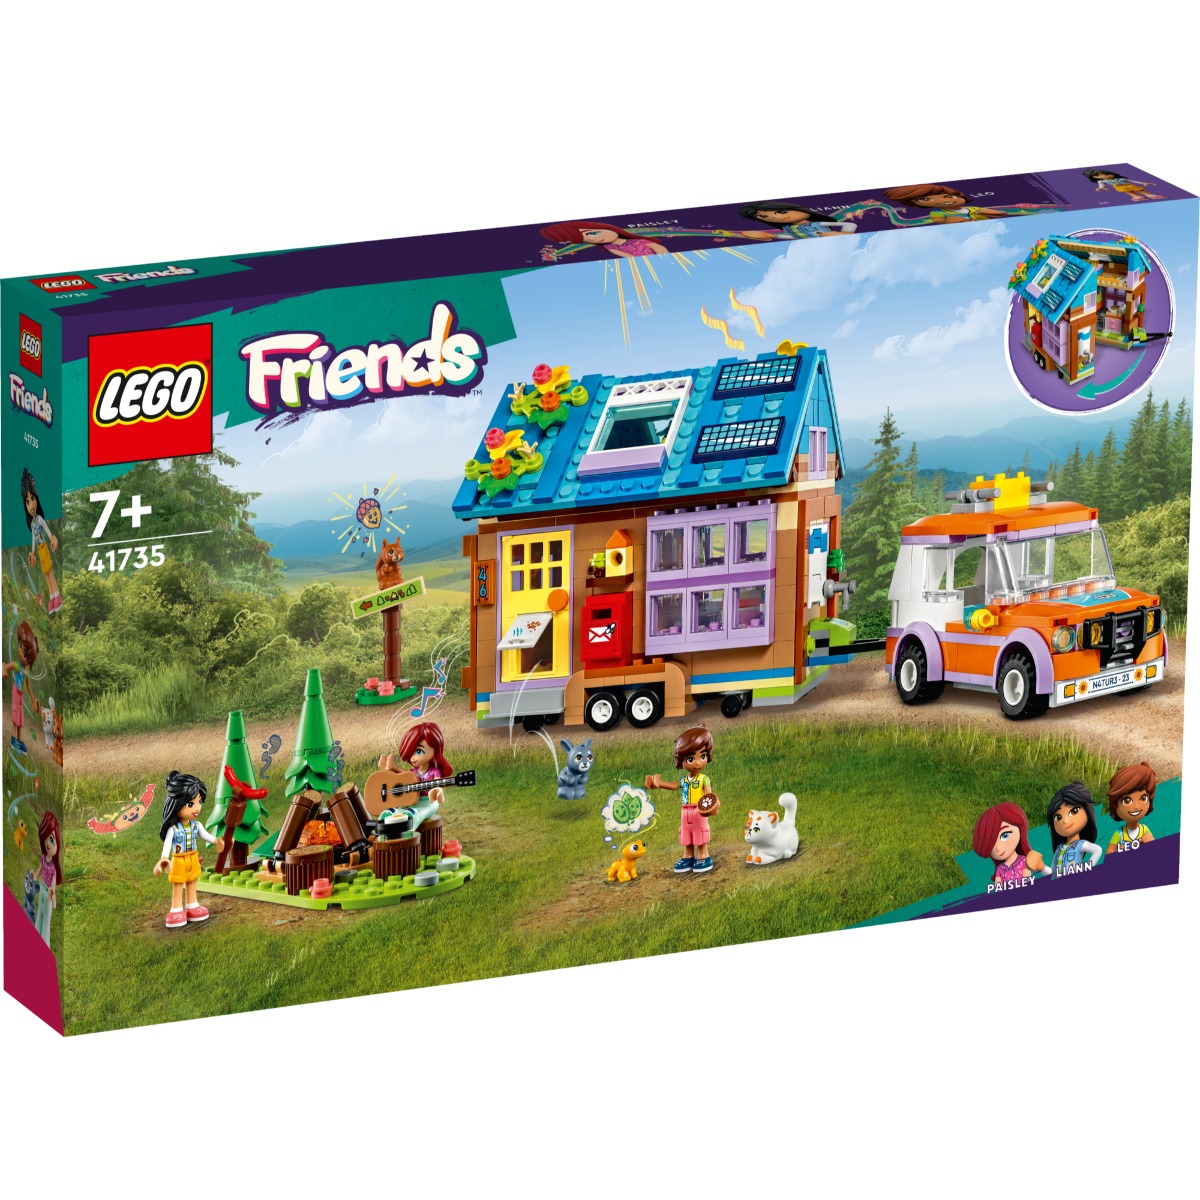 LEGOÂ® Friends - Casuta mobila (41735)